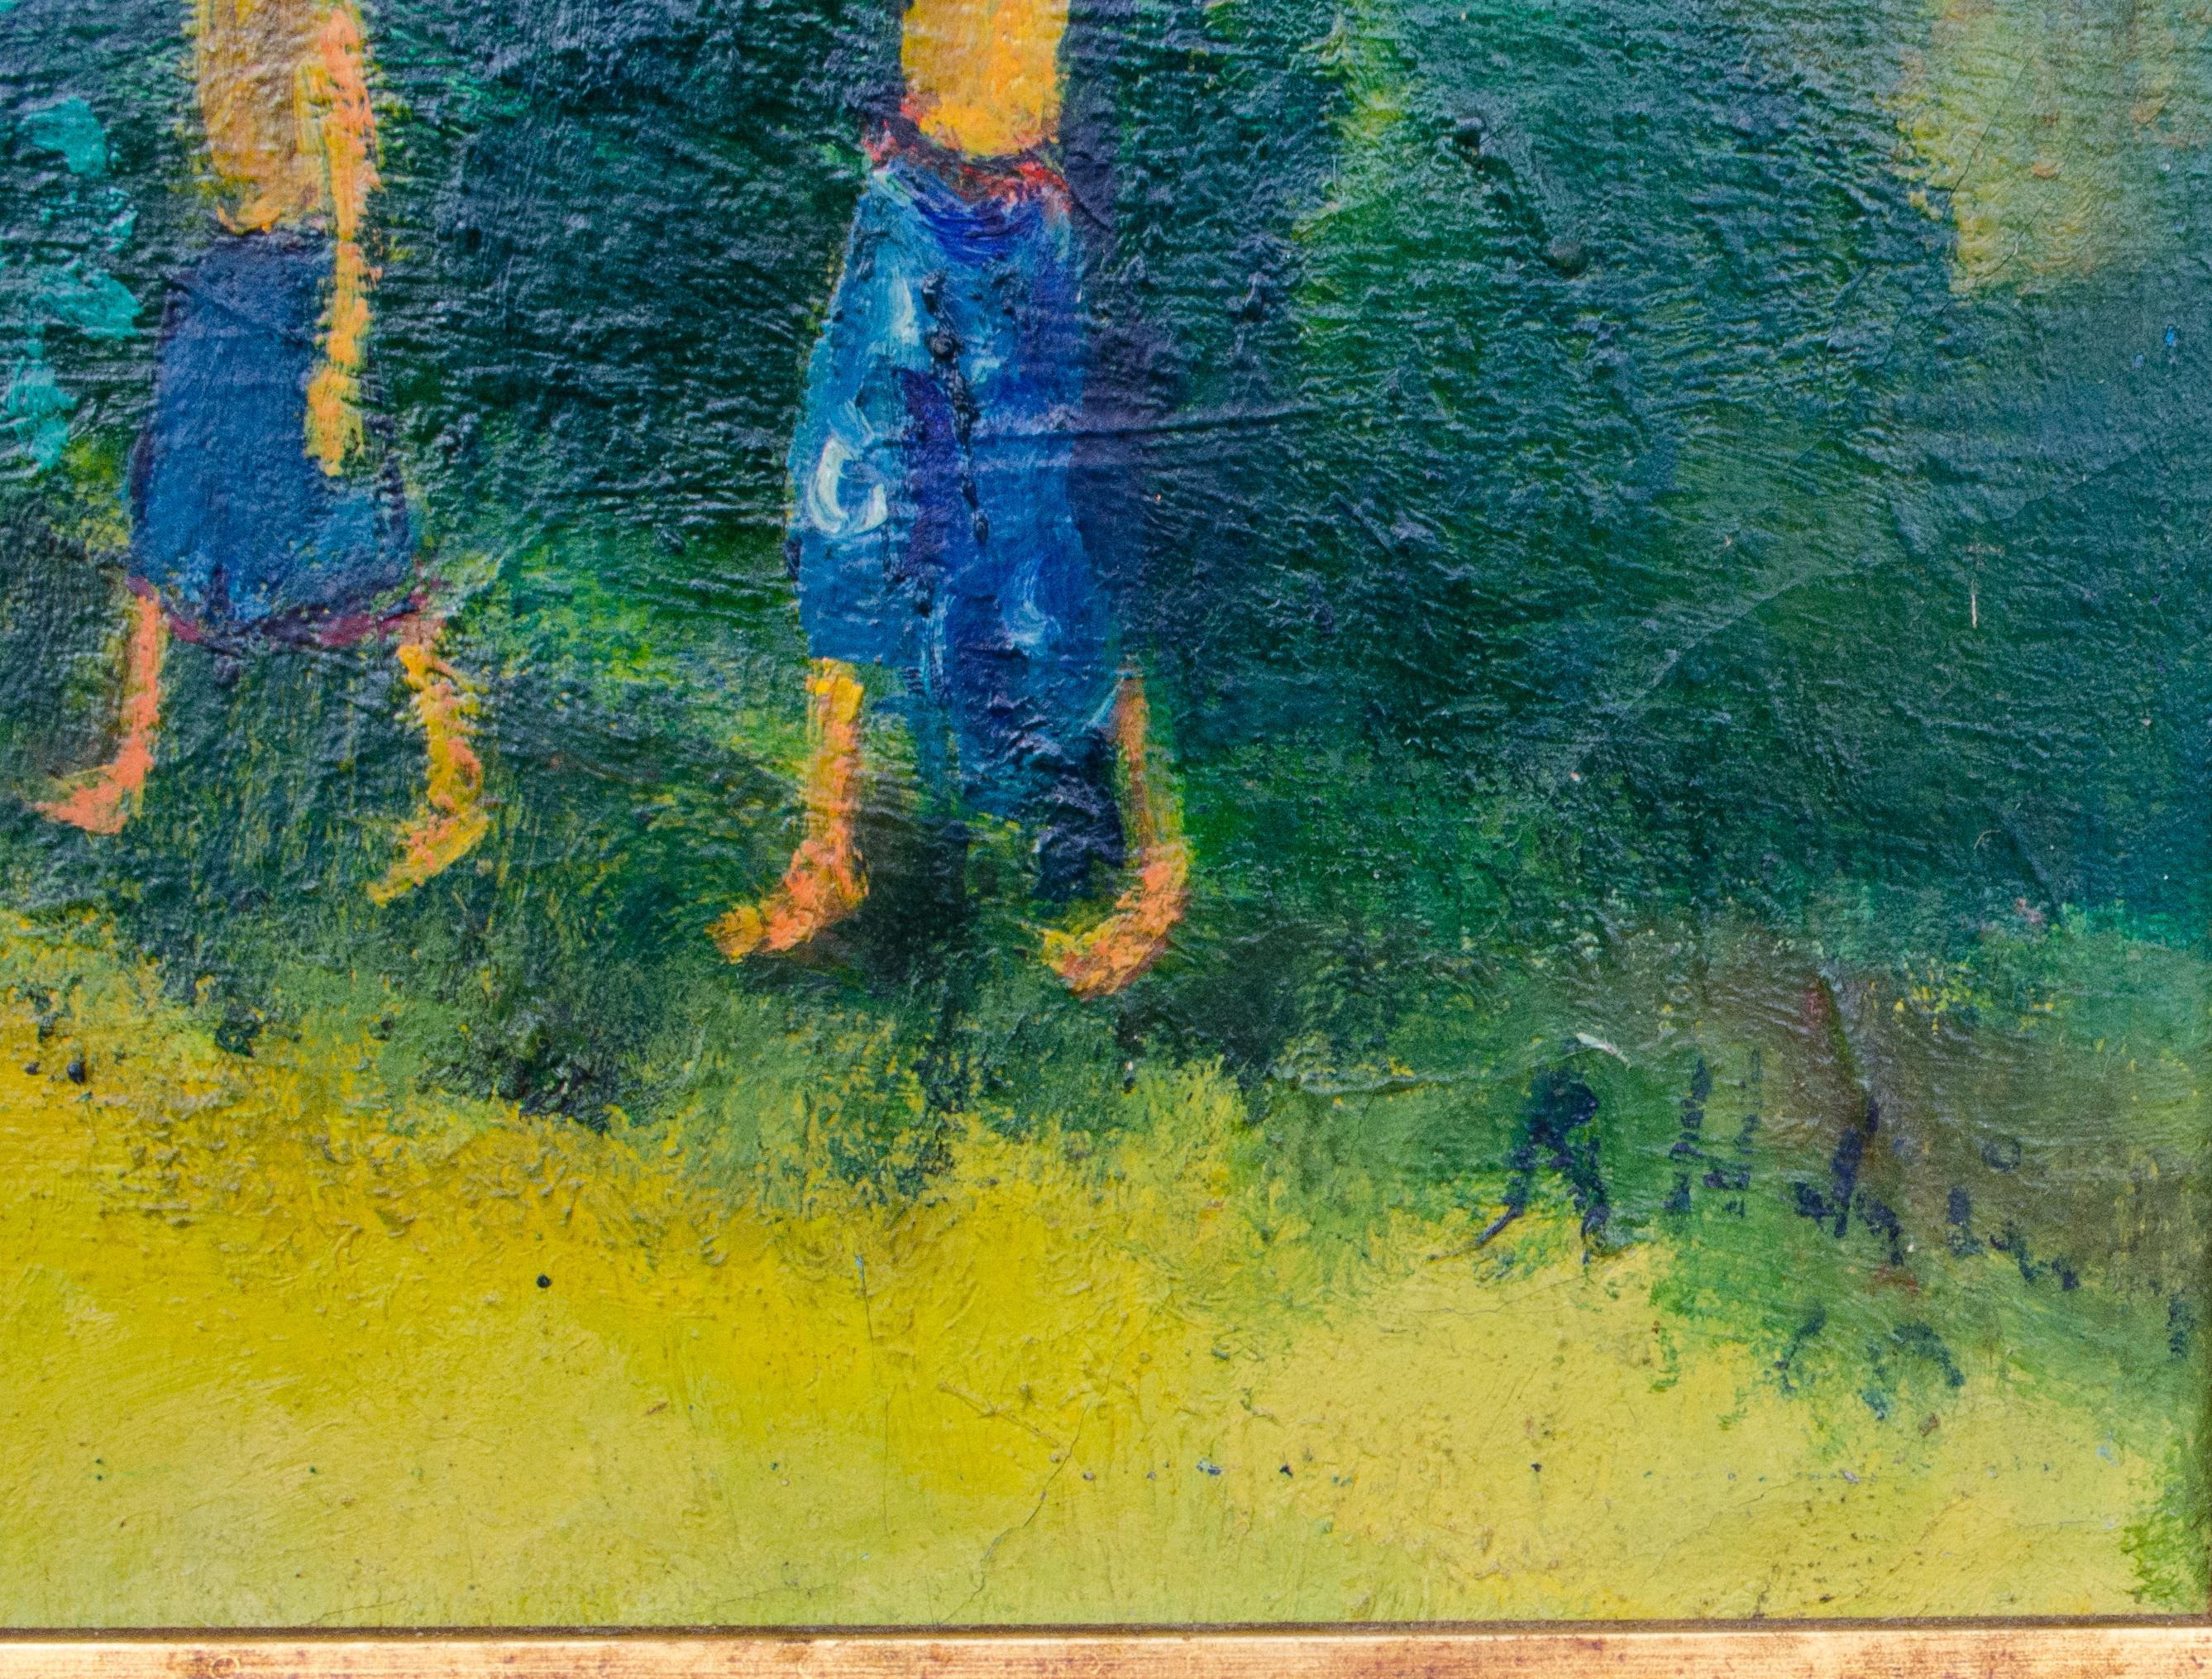 Geheimnisvoller Künstler
Ohne Titel, ca. 20. Jahrhundert
Öl auf Leinwand
22 x 30 Zoll.
Gerahmt: 28 3/8 x 36 x 1 Zoll.
Signiert unten rechts

Provenienz: 
Ehemalige Humala Pontas Sammlung

